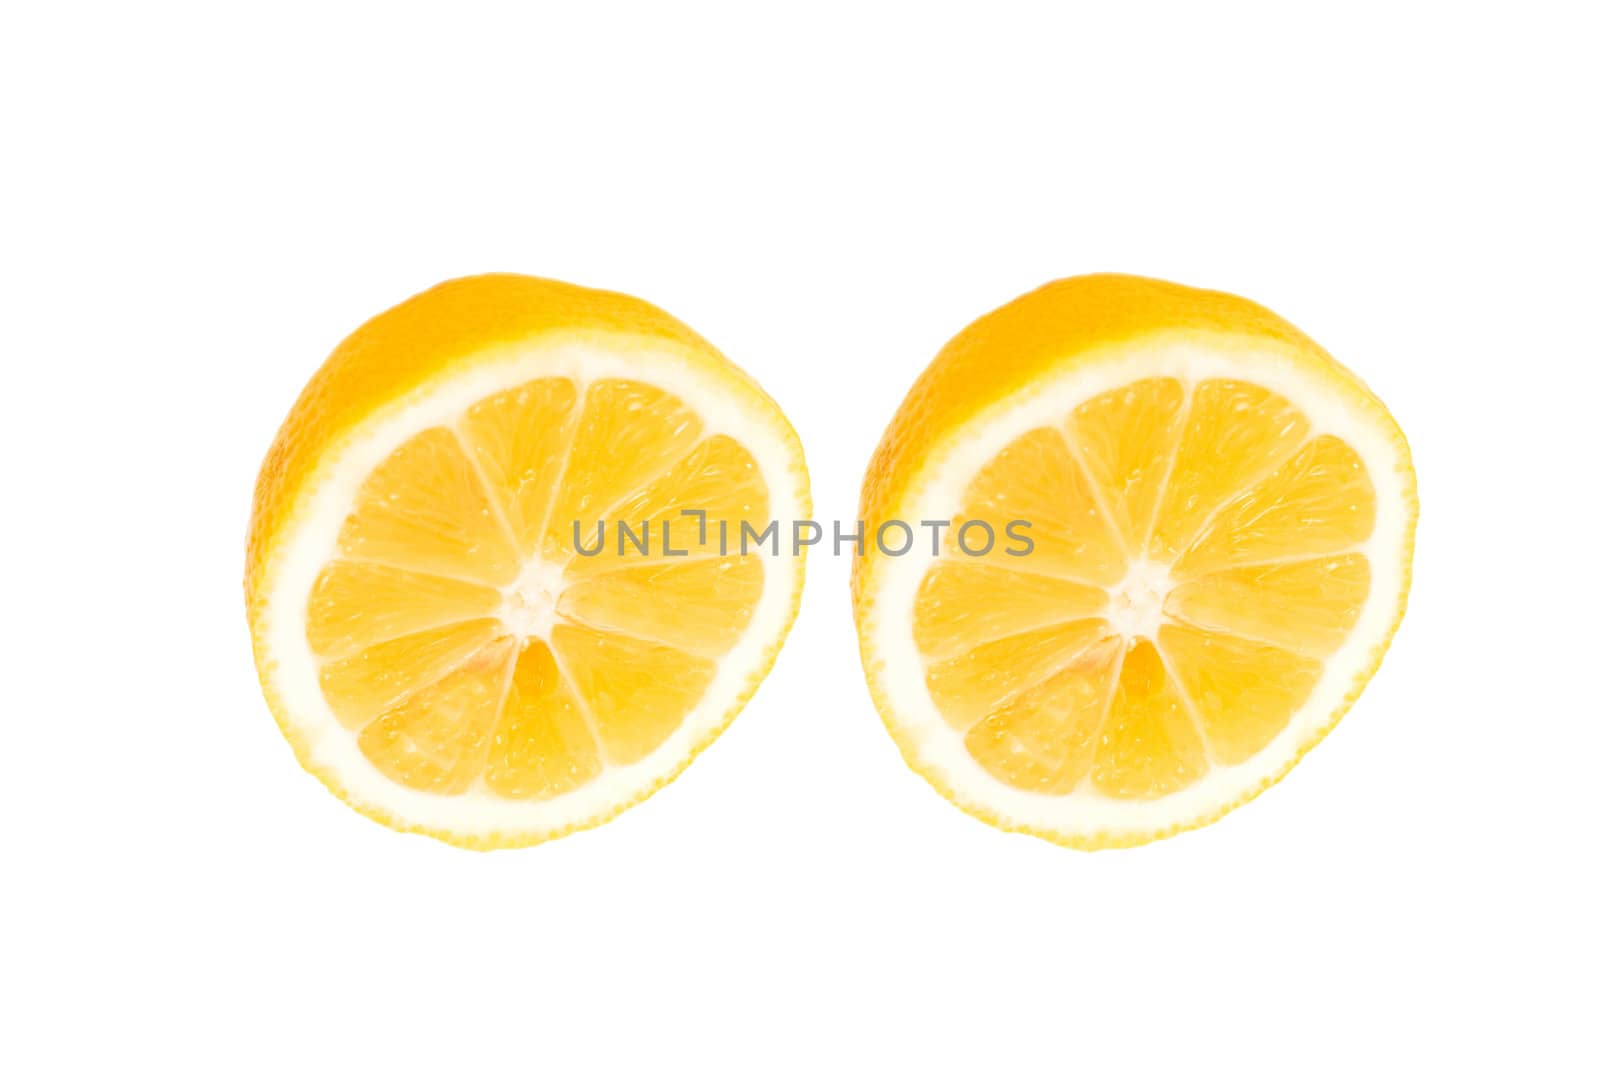 fresh lemon halves on white background
